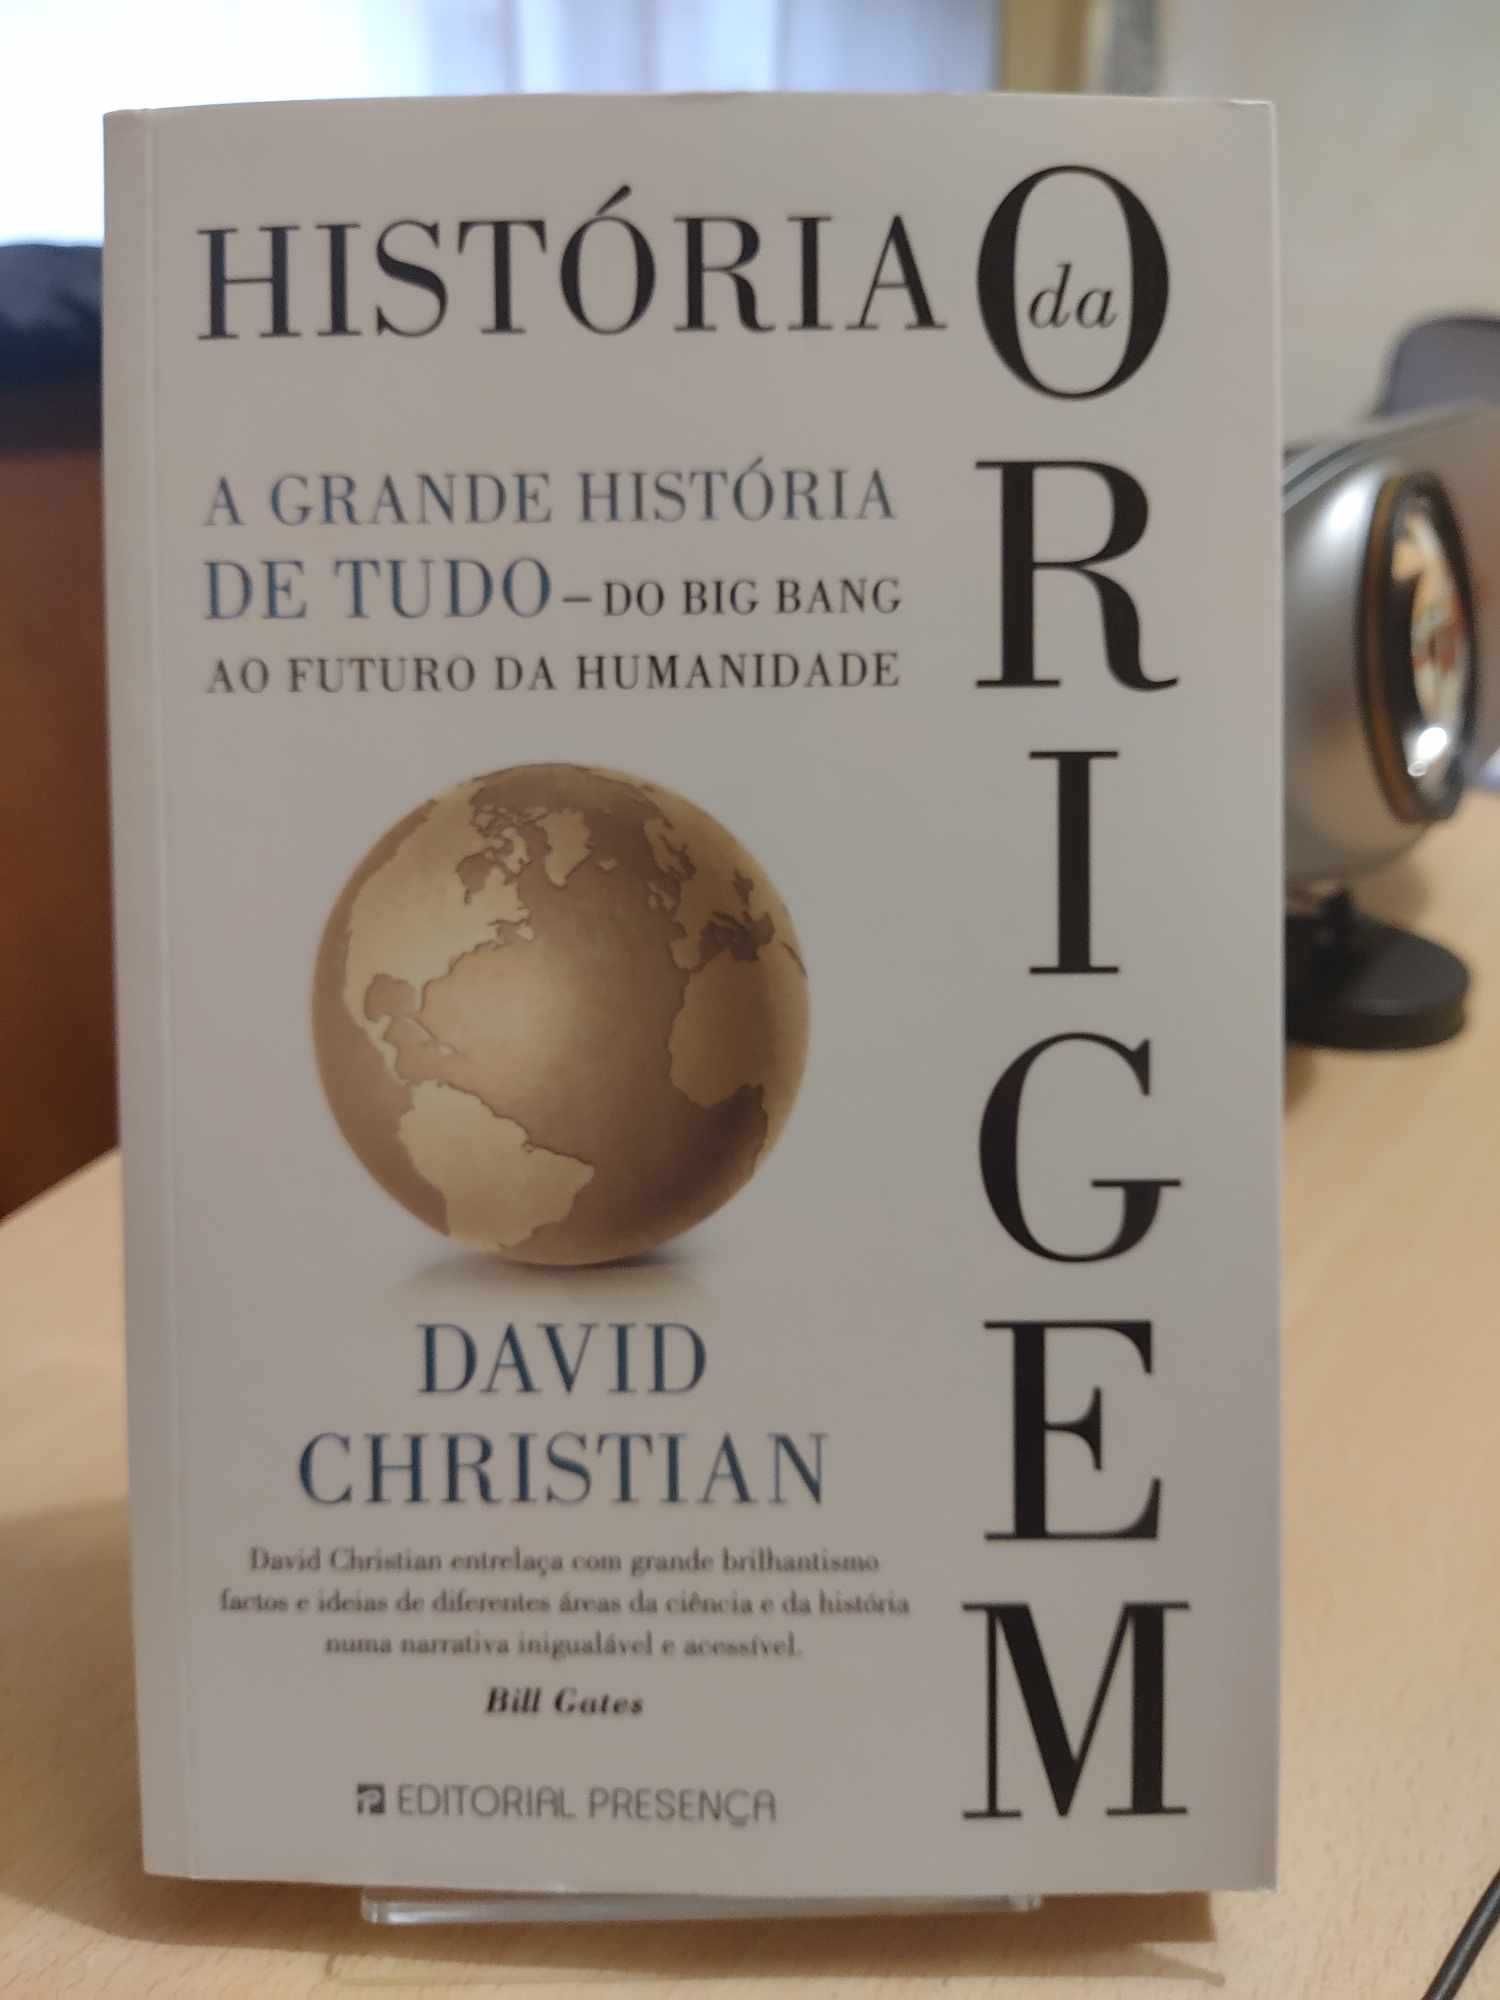 Livro “História da origem”